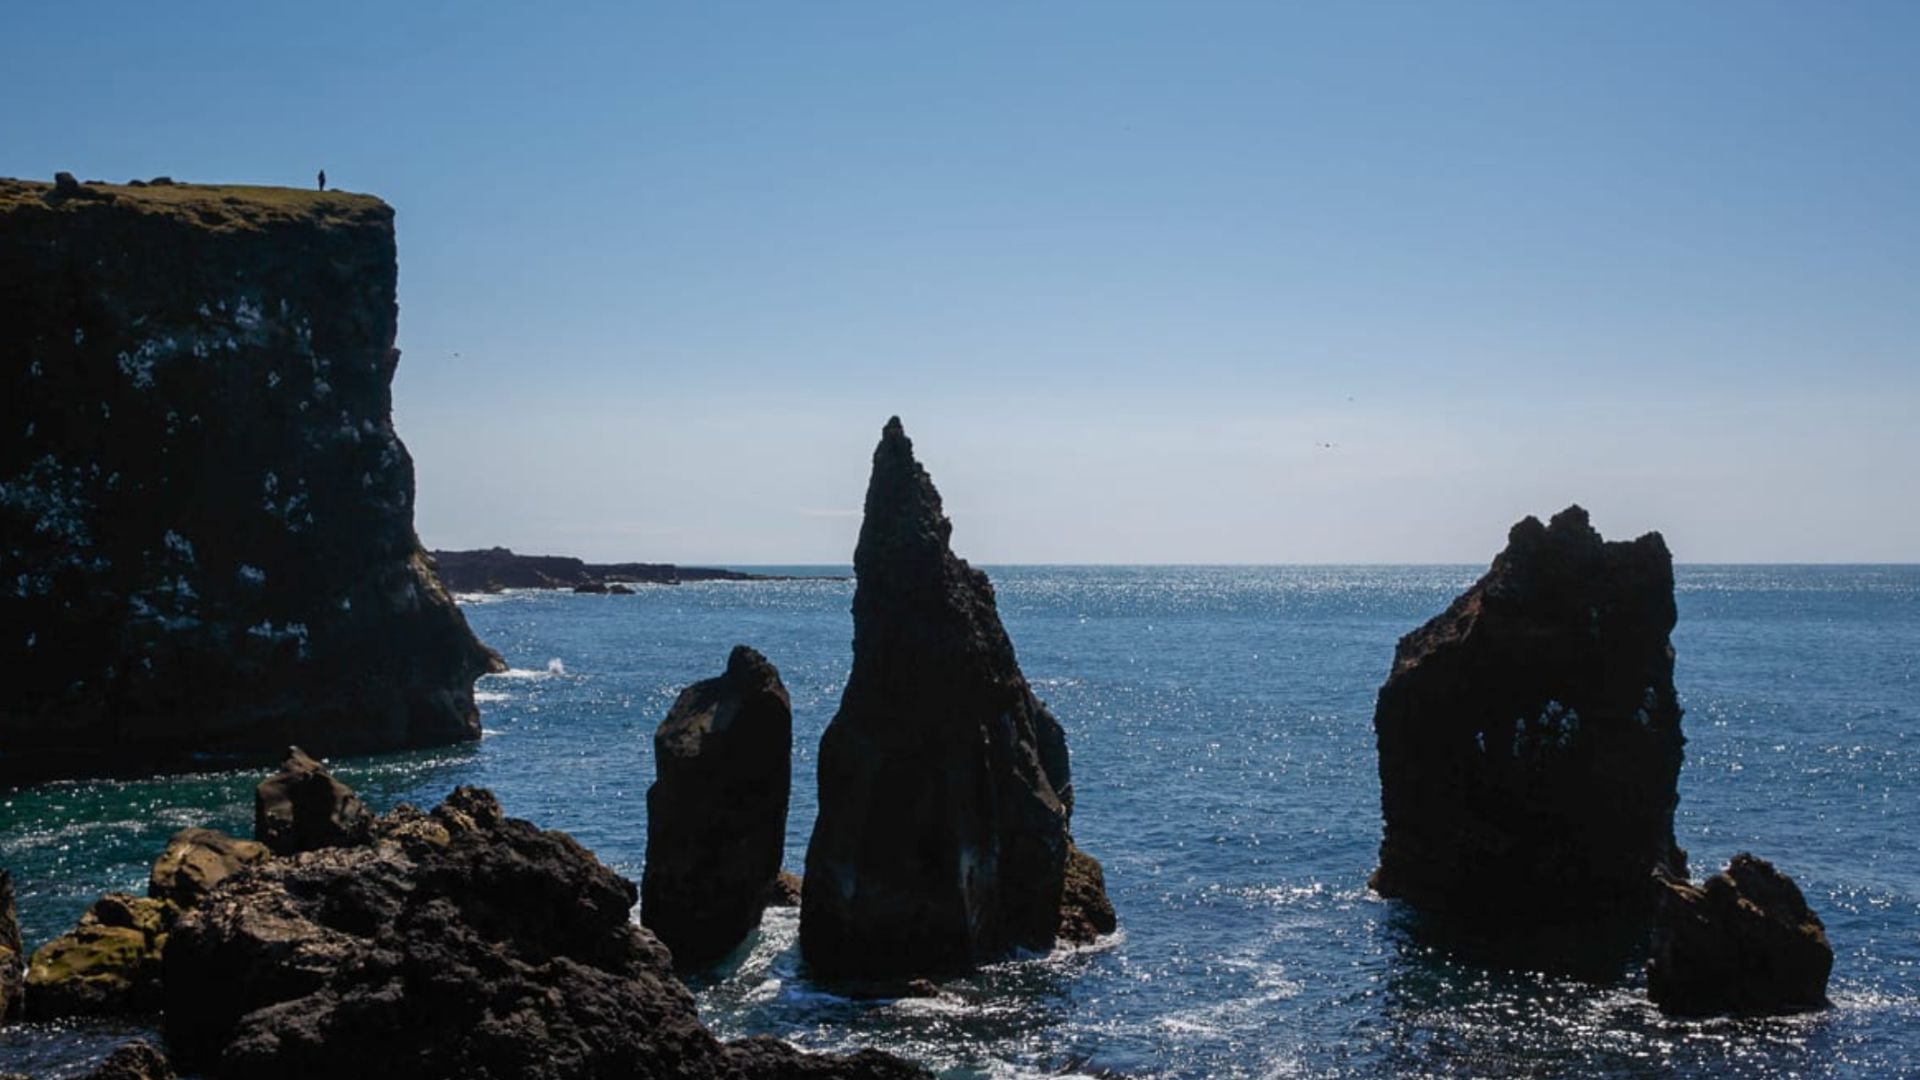 Valahnúkamöl rocks formation at the ocean in Iceland